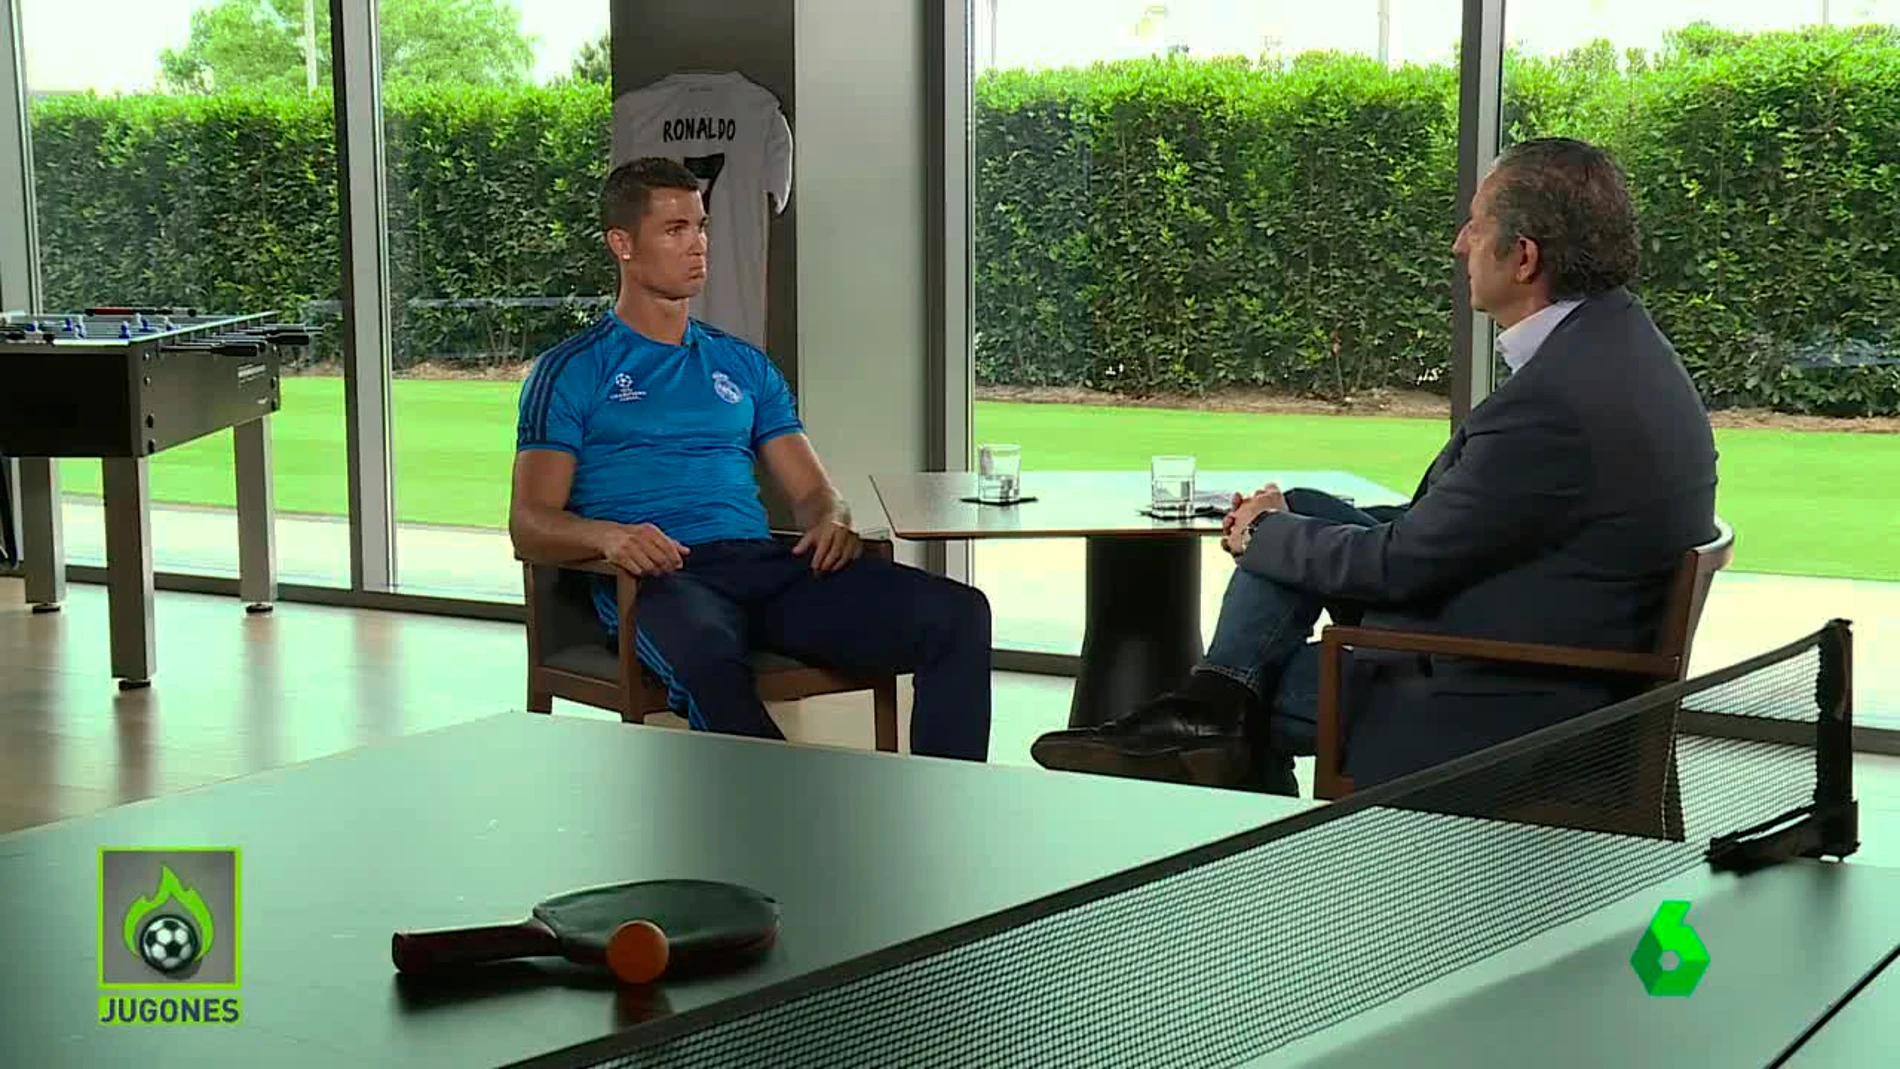 Momento de la entrevista a Cristiano Ronaldo